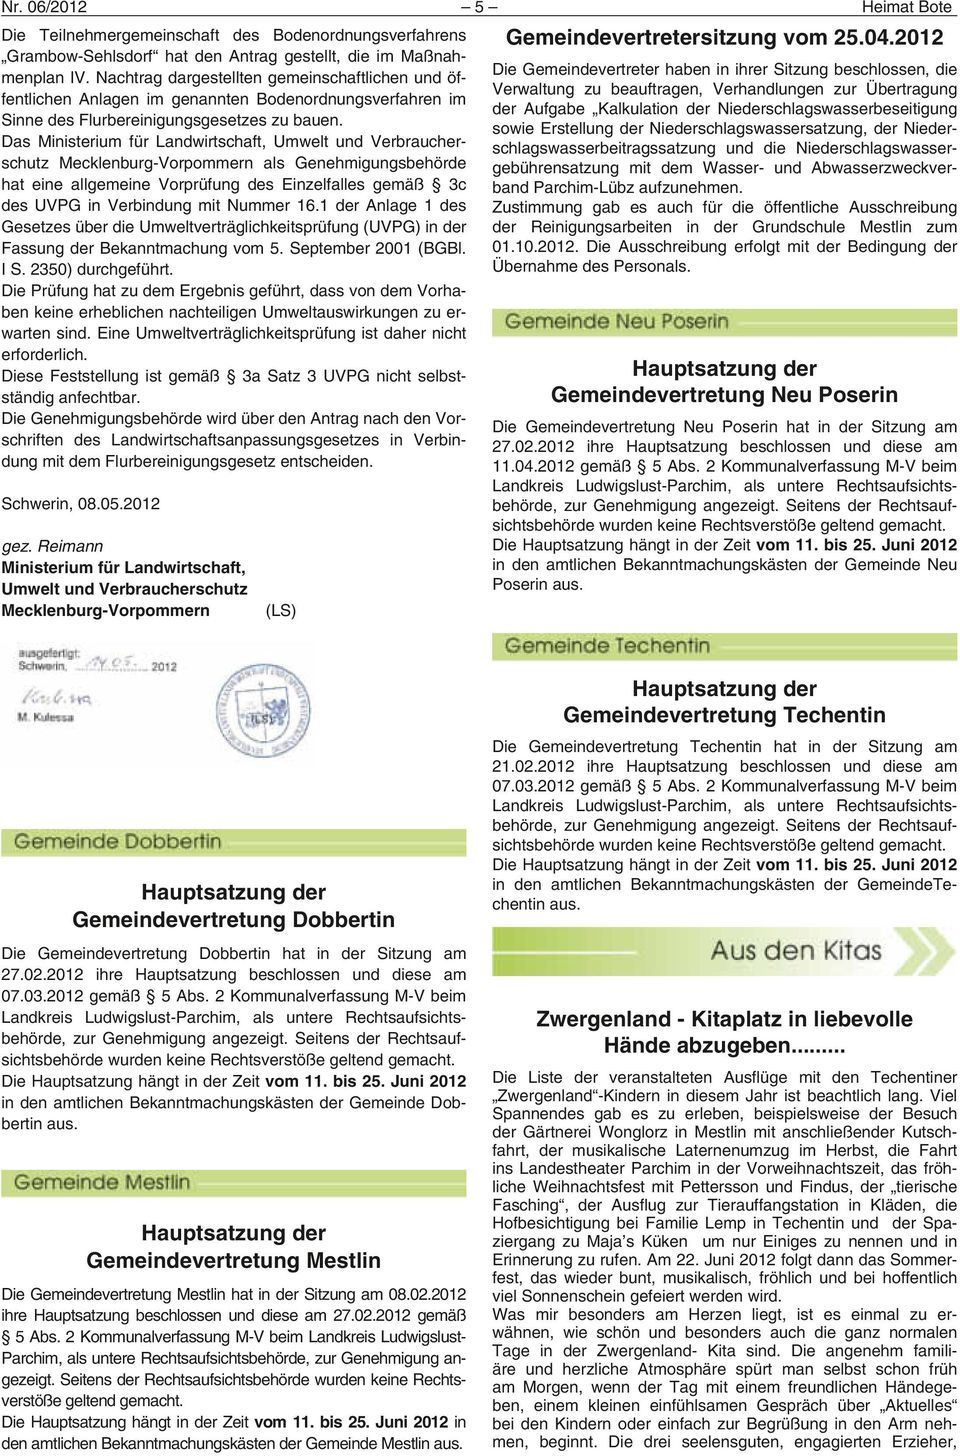 Das Ministerium für Landwirtschaft, Umwelt und Verbraucherschutz Mecklenburg-Vorpommern als Genehmigungsbehörde hat eine allgemeine Vorprüfung des Einzelfalles gemäß 3c des UVPG in Verbindung mit